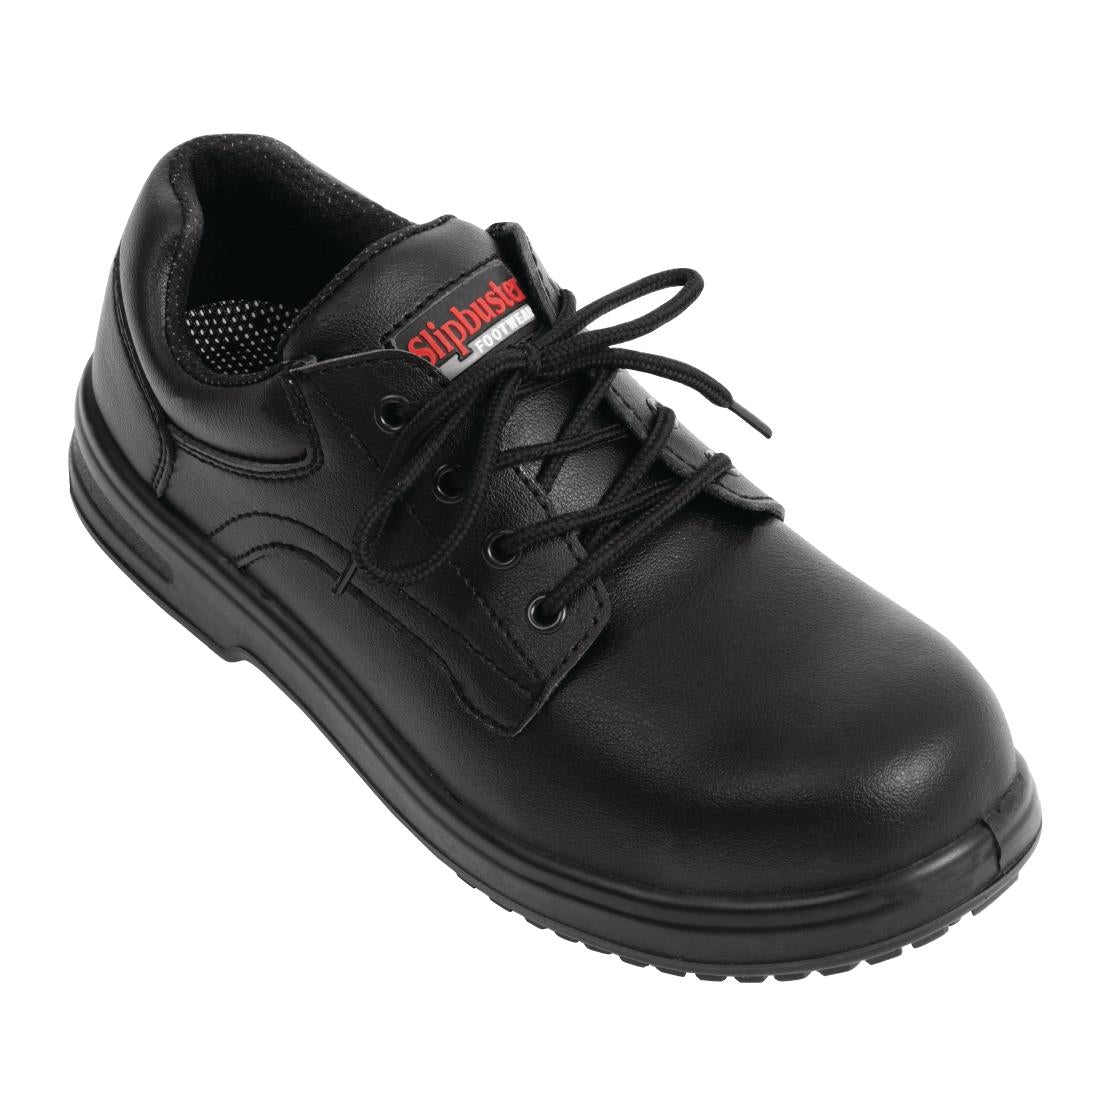 BB498-44 Slipbuster Basic Shoes Slip Resistant Black 44 JD Catering Equipment Solutions Ltd